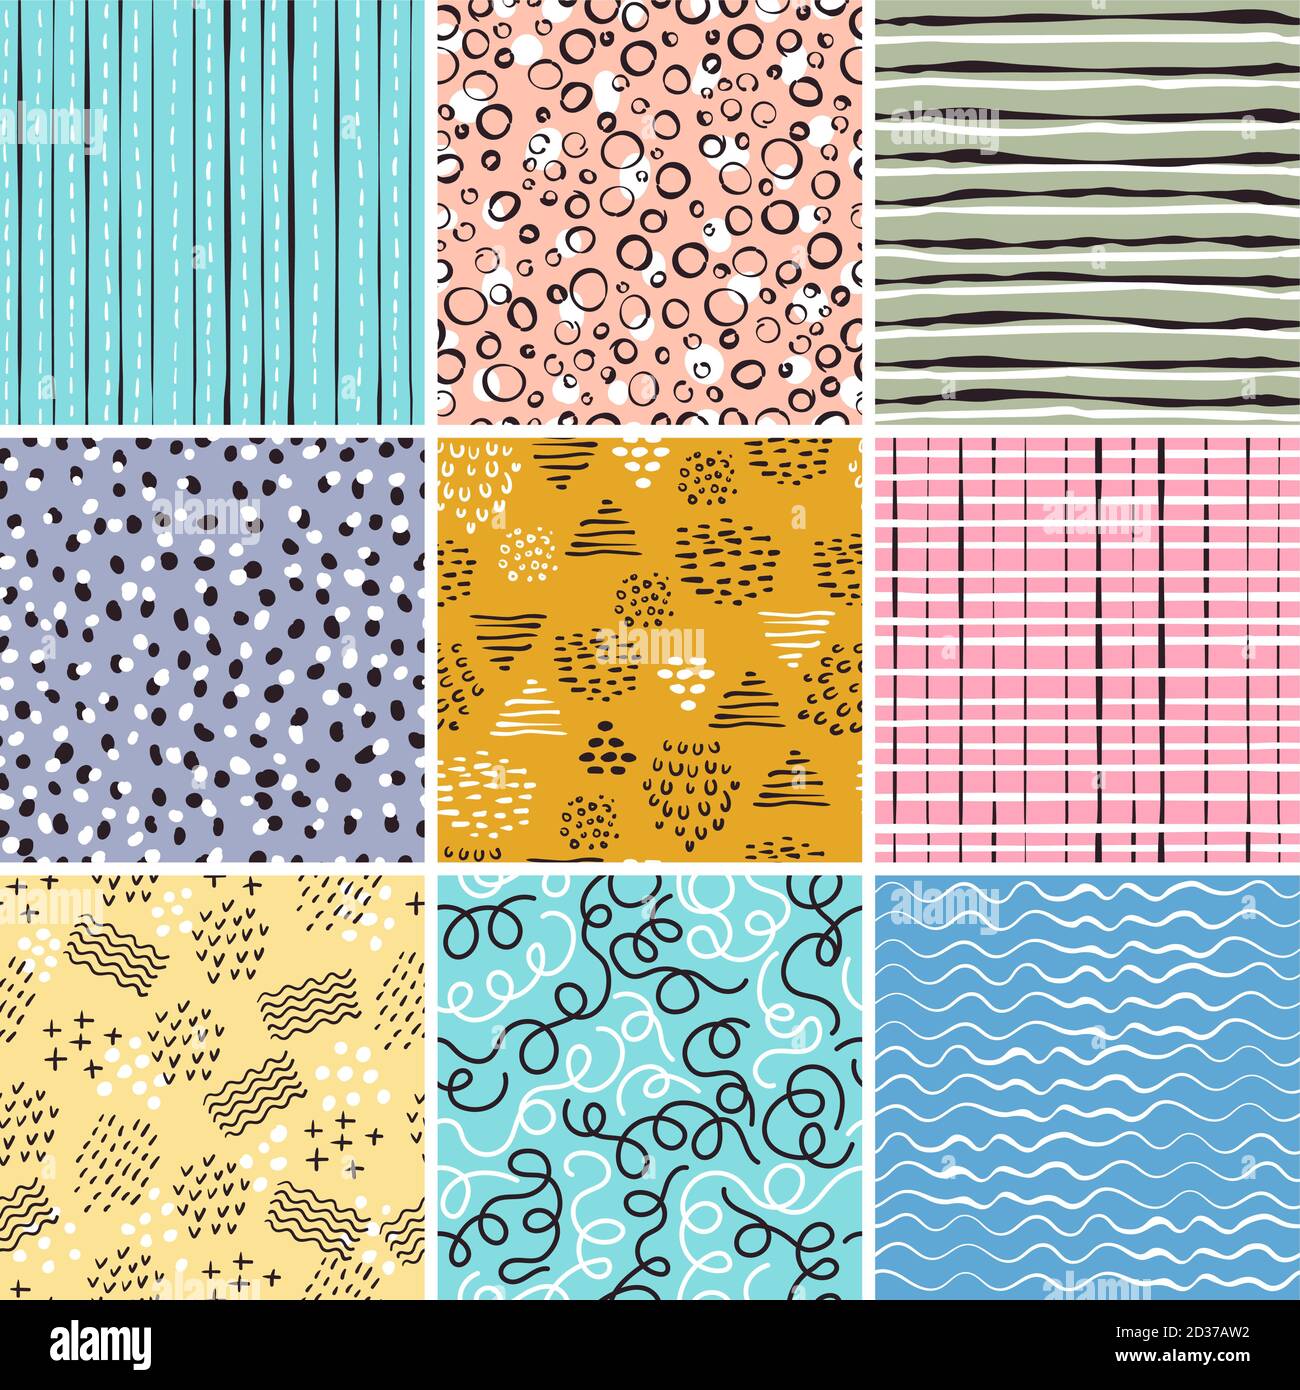 Kindisches Muster. Einfache Linien abstrakte Formen doodles Streifen Vektor nahtlose textile Design-Projekte Stock Vektor